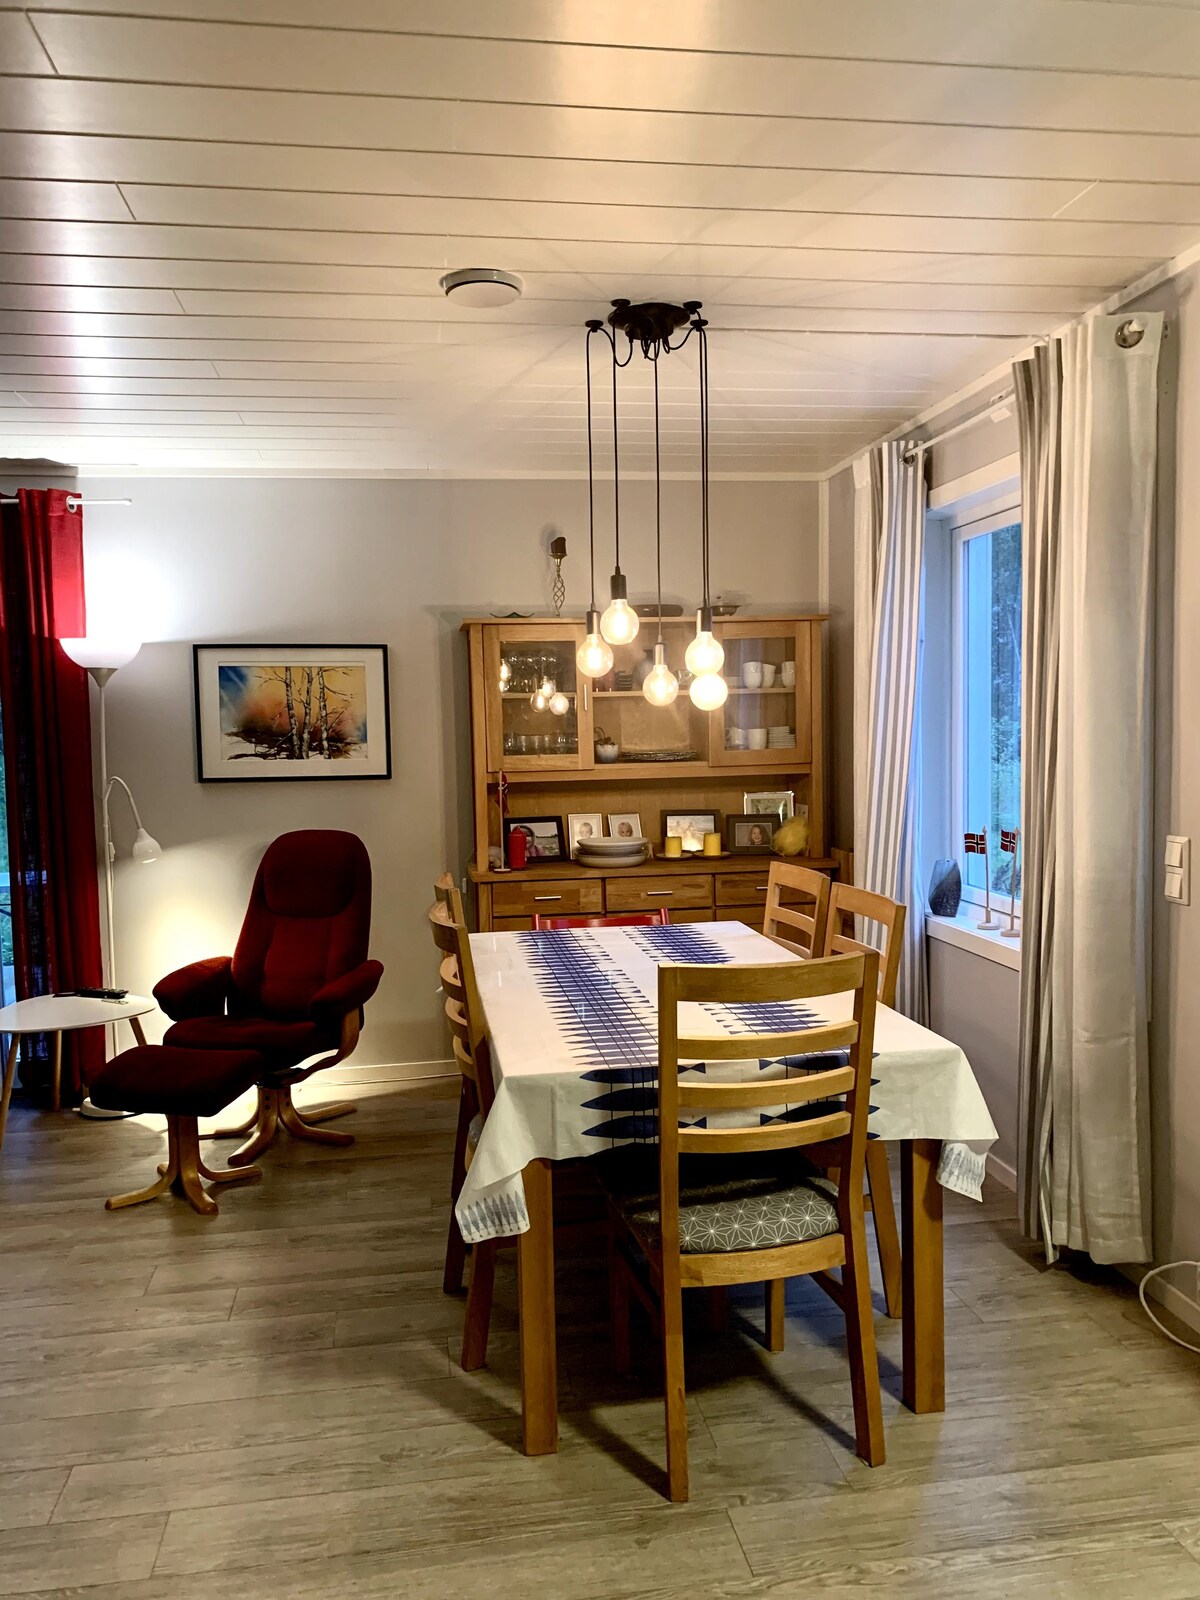 Olsborg/Høgun in Målselv大型单人住宅